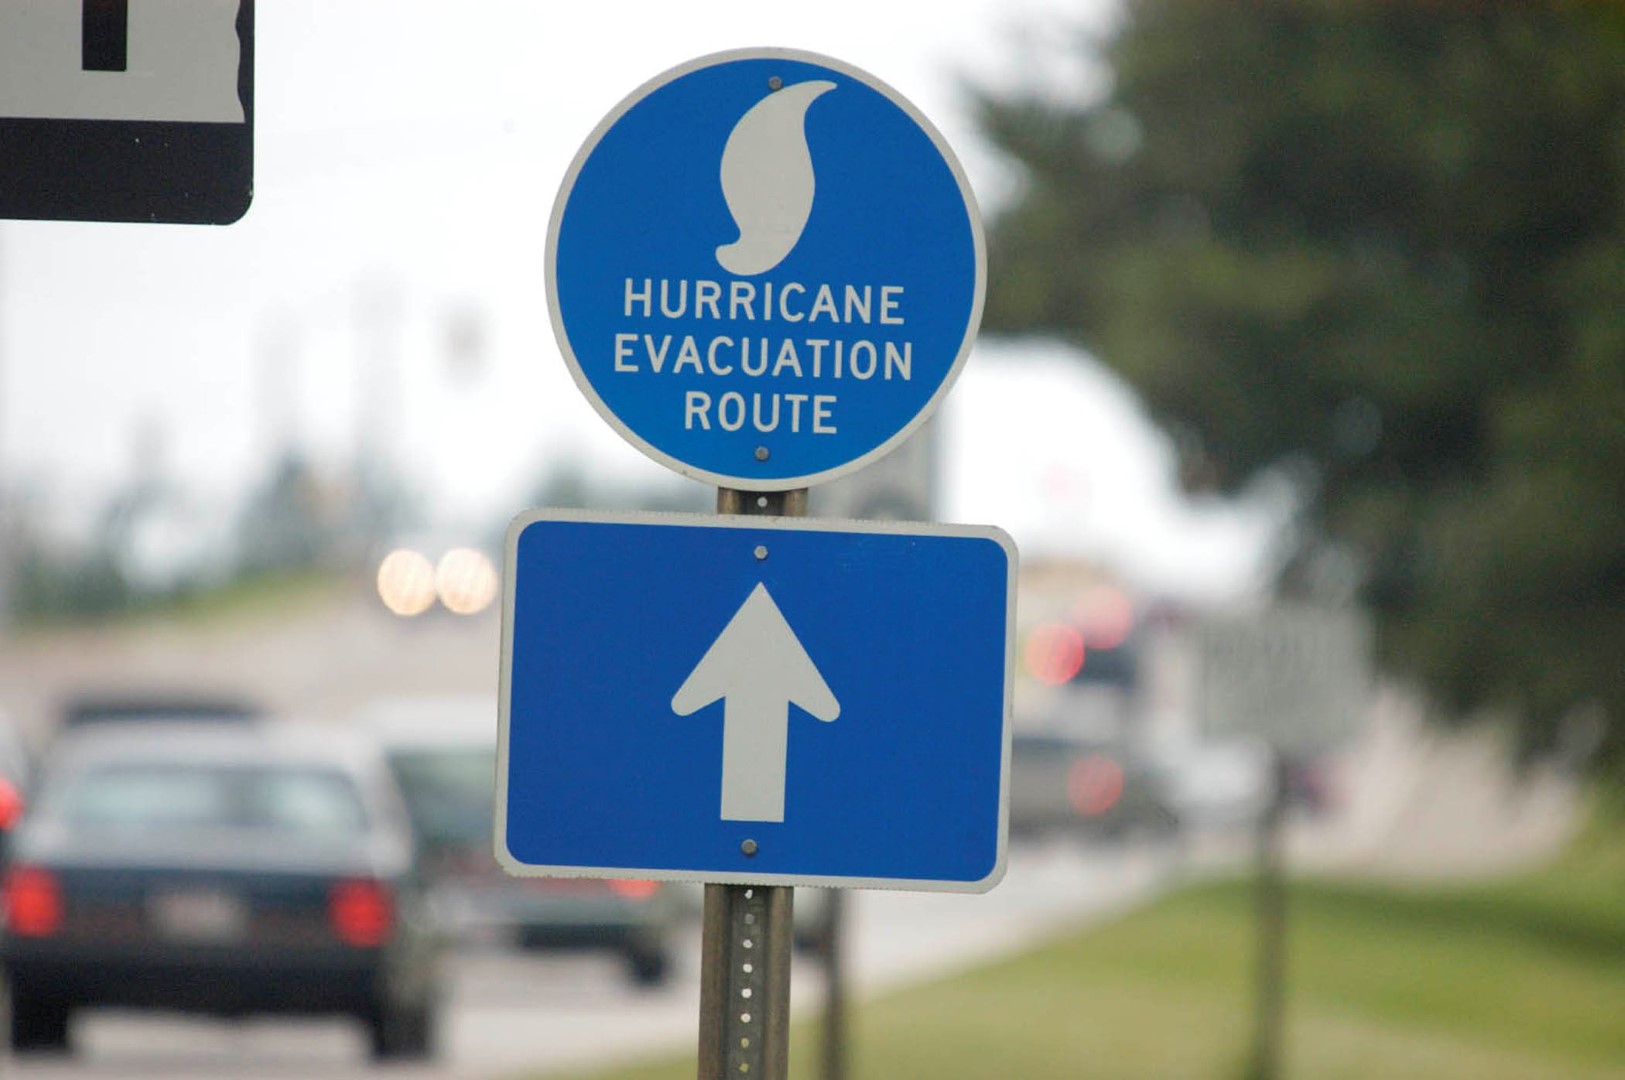 evacuation-route-hurricane-large